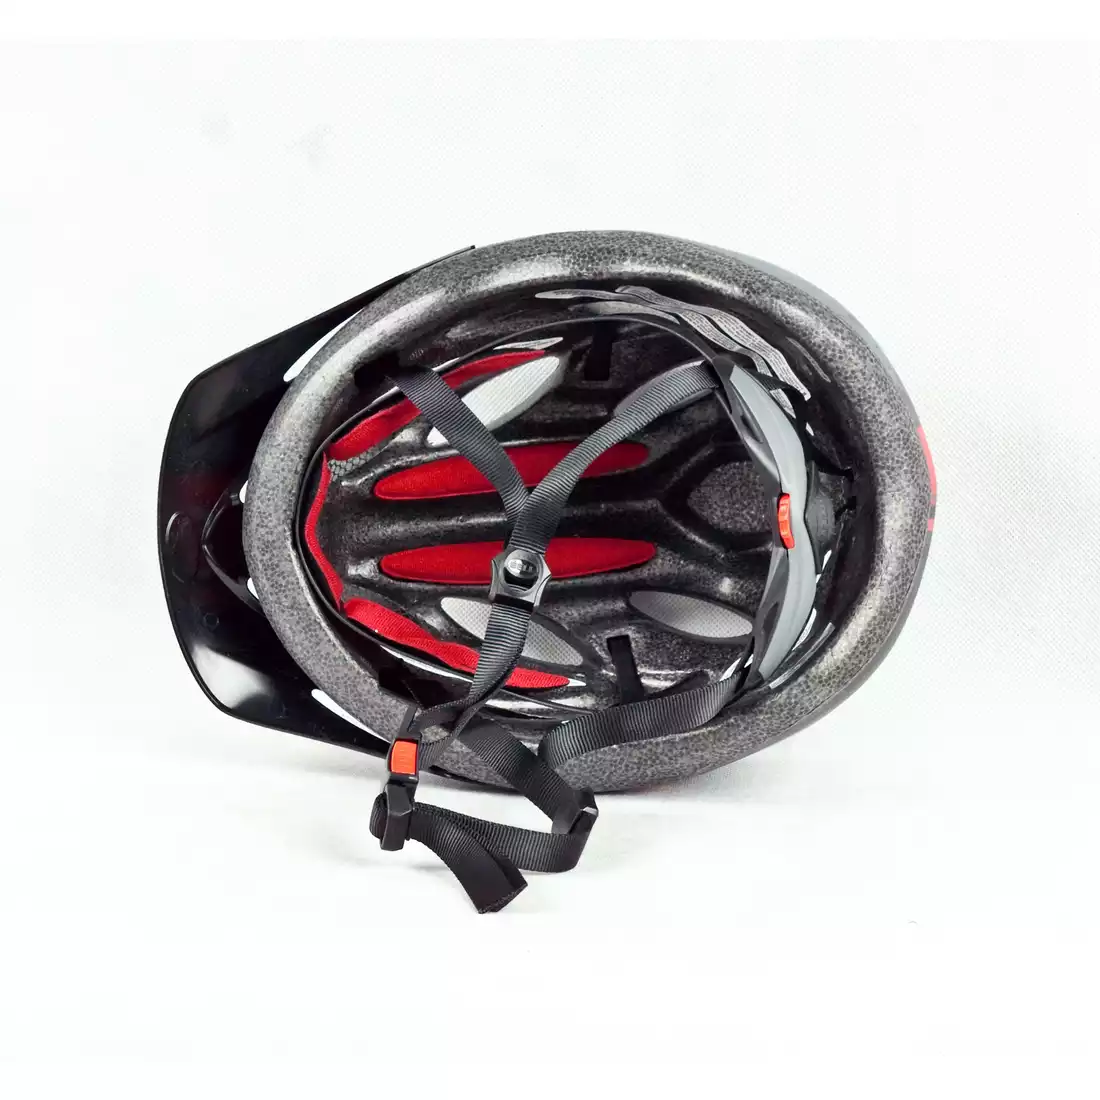 BELL XLP kask rowerowy, czarno-czerwony, duży rozmiar